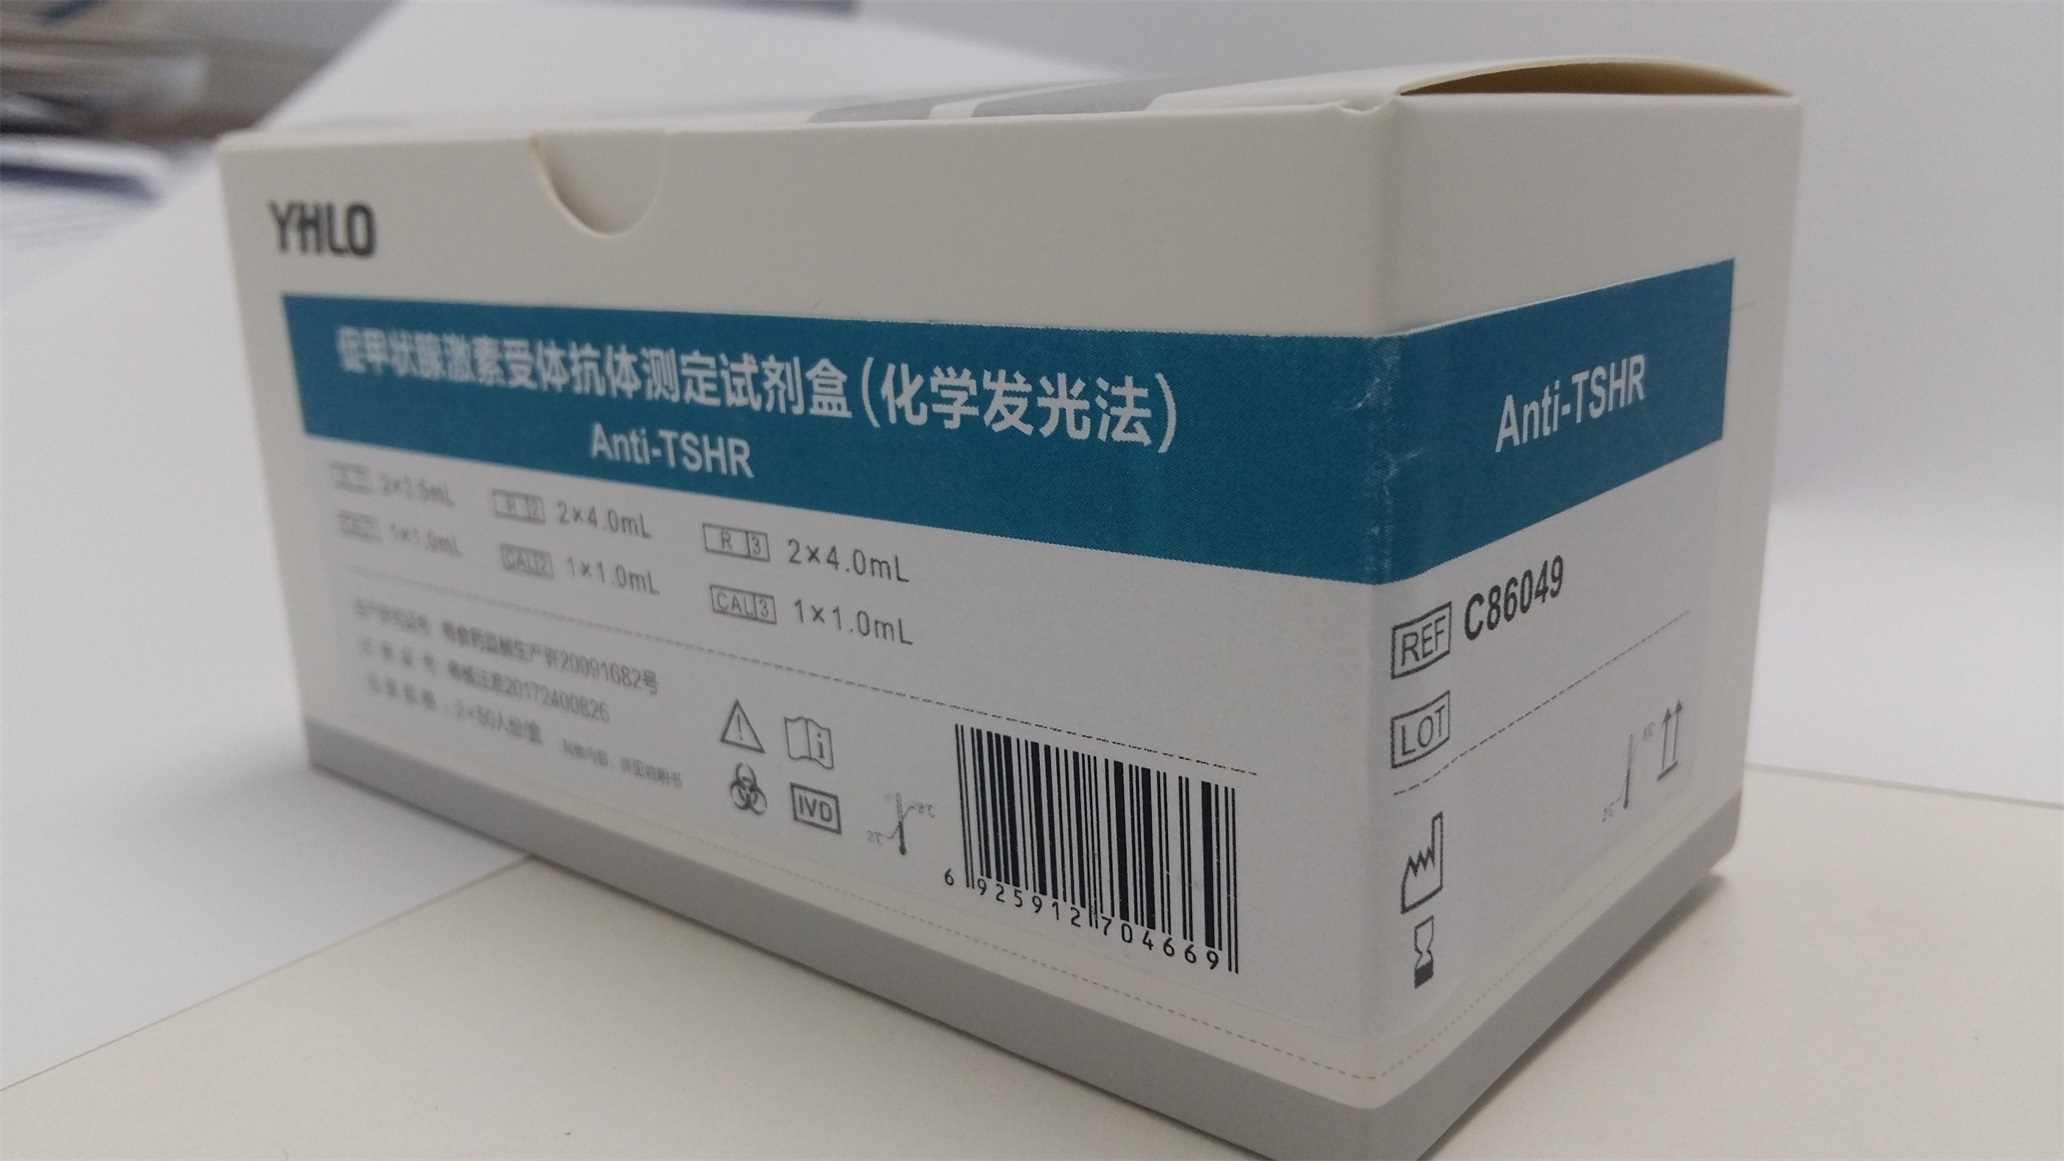 【亚辉龙】促甲状腺激素受体抗体测定试剂盒(化学发光法)-云医购